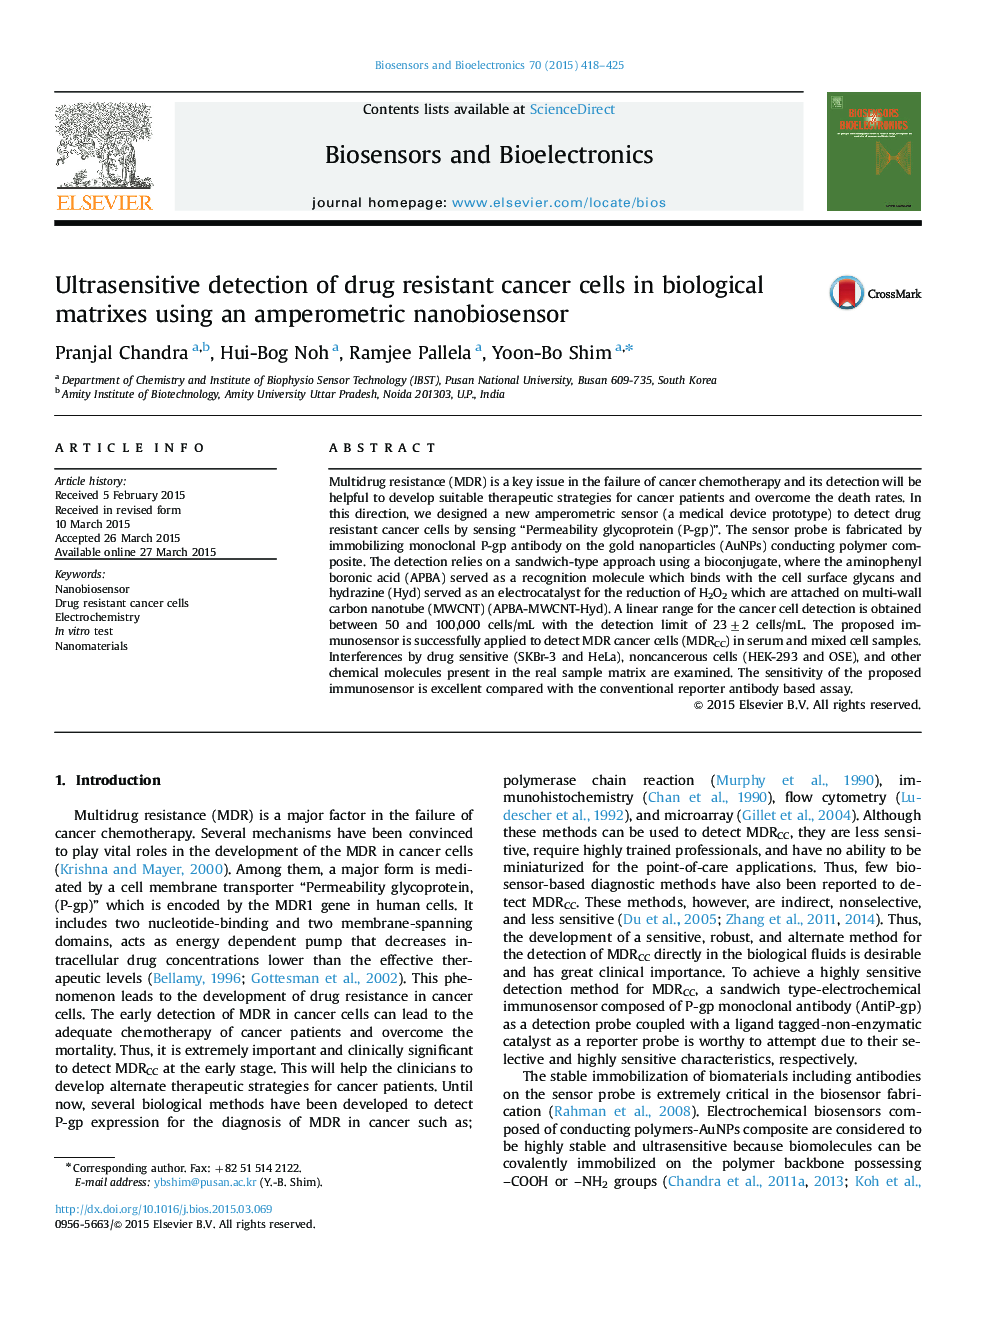 تشخیص حساسیت سلولهای سرطانی مقاوم در برابر دارو در ماتریس های بیولوژیکی با استفاده از نانوبایسنسور آمپرئومتریک 